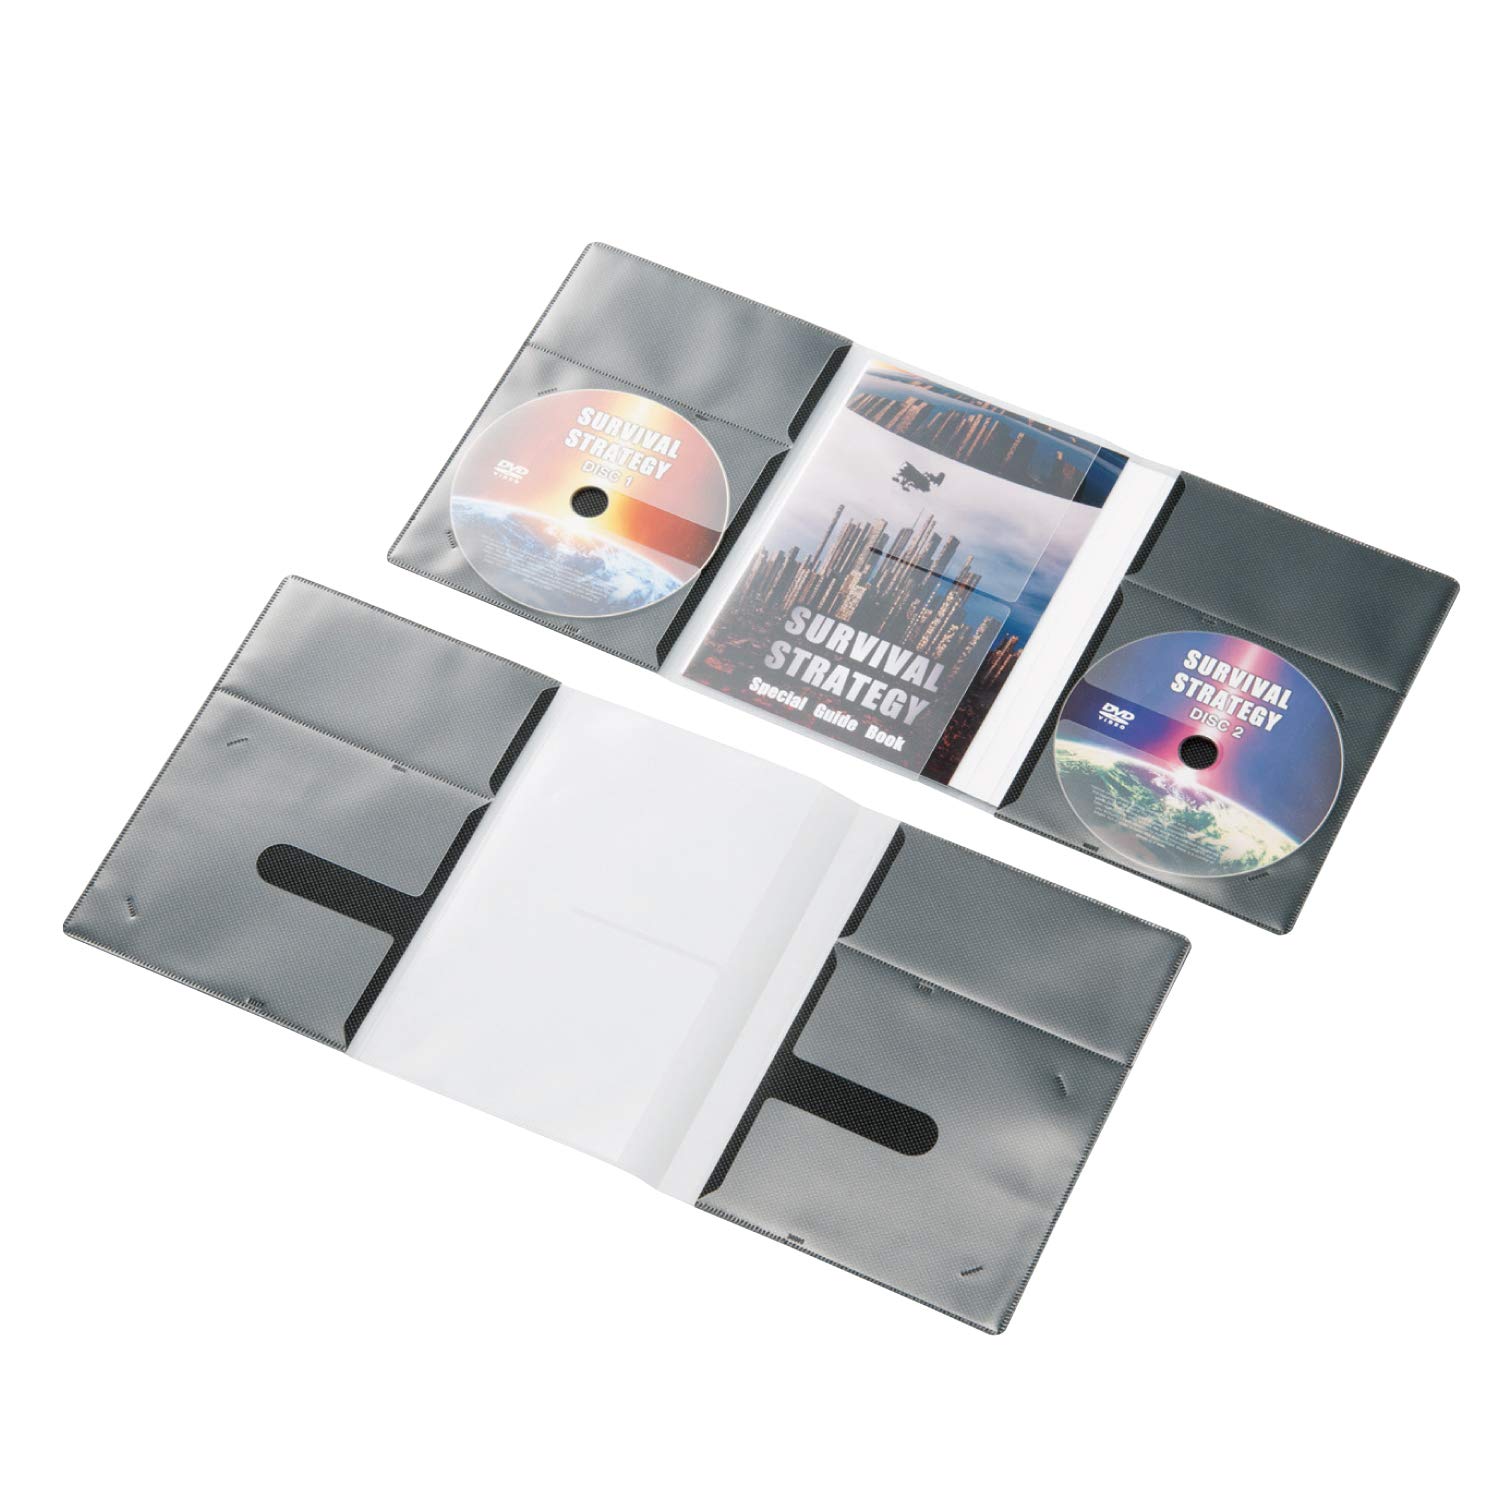 商品情報商品の説明説明 ■音楽CDや映画DVDなどのディスクのほかに、ブックレット、背タイトル、裏ジャケットまで、付属品もまとめて収納できるソフトケースです。 ■マチをとらないソフトタイプなので、スリムに整理可能です。 ■映画DVDなどの収納に最適なトールケースサイズです。 ■2枚組DVDなどの収納に便利なディスク2枚収納タイプです。 ■ソフトケースには透明度の高いクリア素材を採用し、ジャケットがきれいに収納できます。 ■サイズ:幅419×奥行1mm×高さ193 ■材質:不織布+PP ■カラー:ブラック ■収納枚数:2 ■入り数:10主な仕様 ディスクだけでなく、ブックレットや裏ジャケットまで、付属品も収納できるトールサイズのソフトケースbr材質:不織布+PPbr収納枚数:2br入り数:10brマチをとらないソフトタイプなので、スリムに整理可能